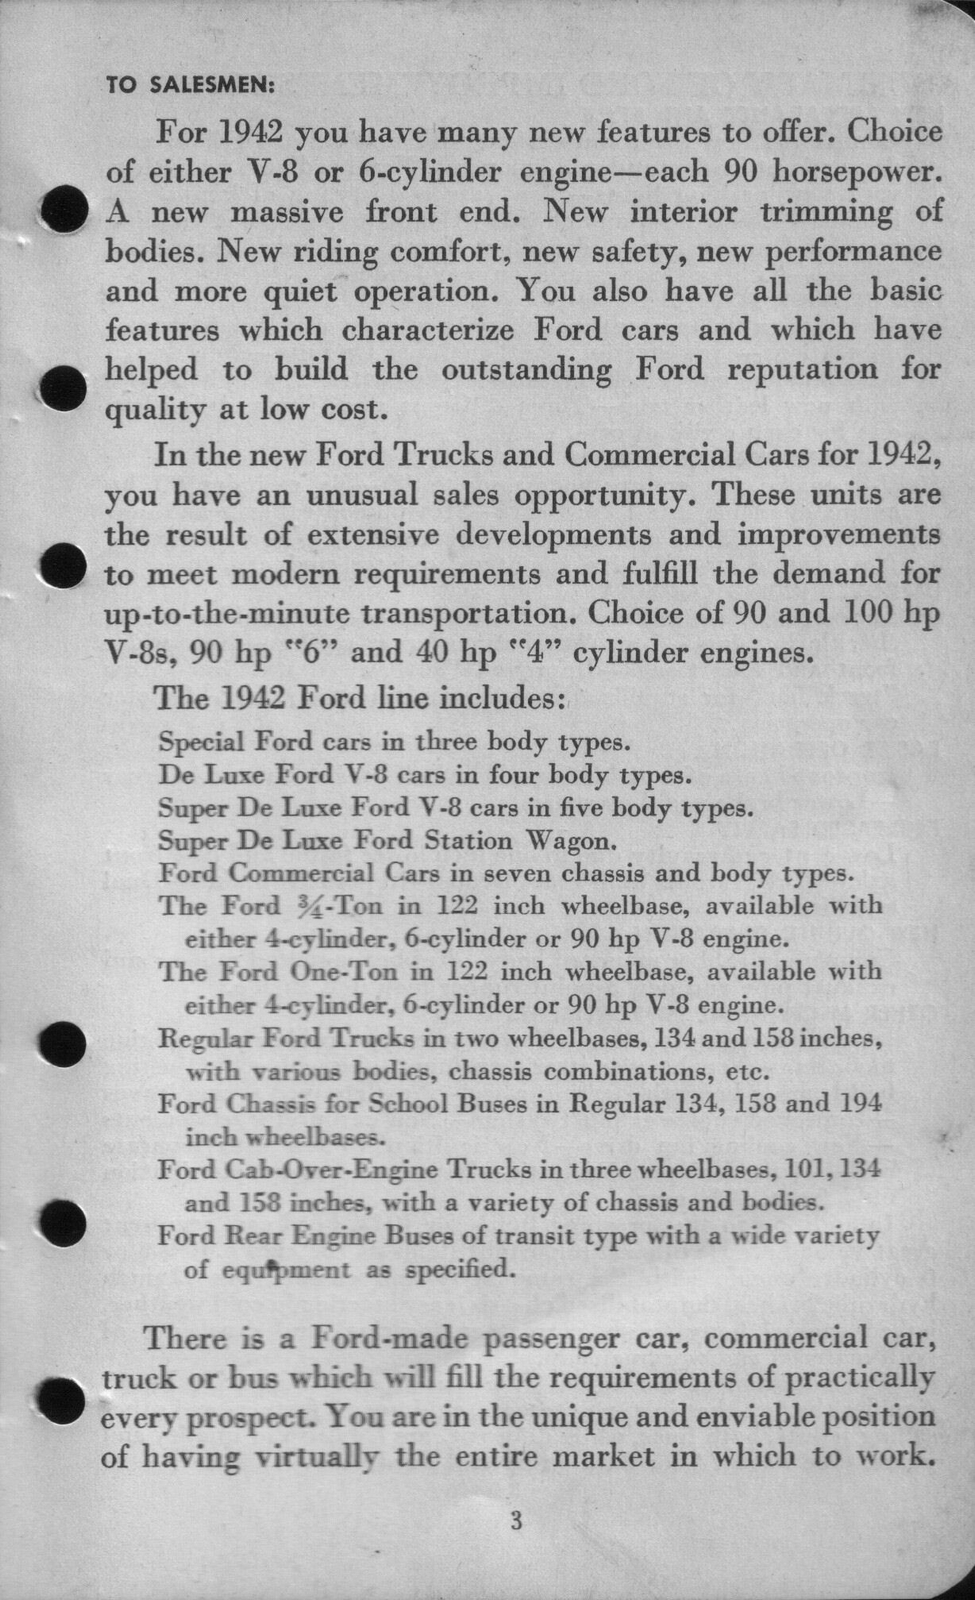 n_1942 Ford Salesmans Reference Manual-003.jpg